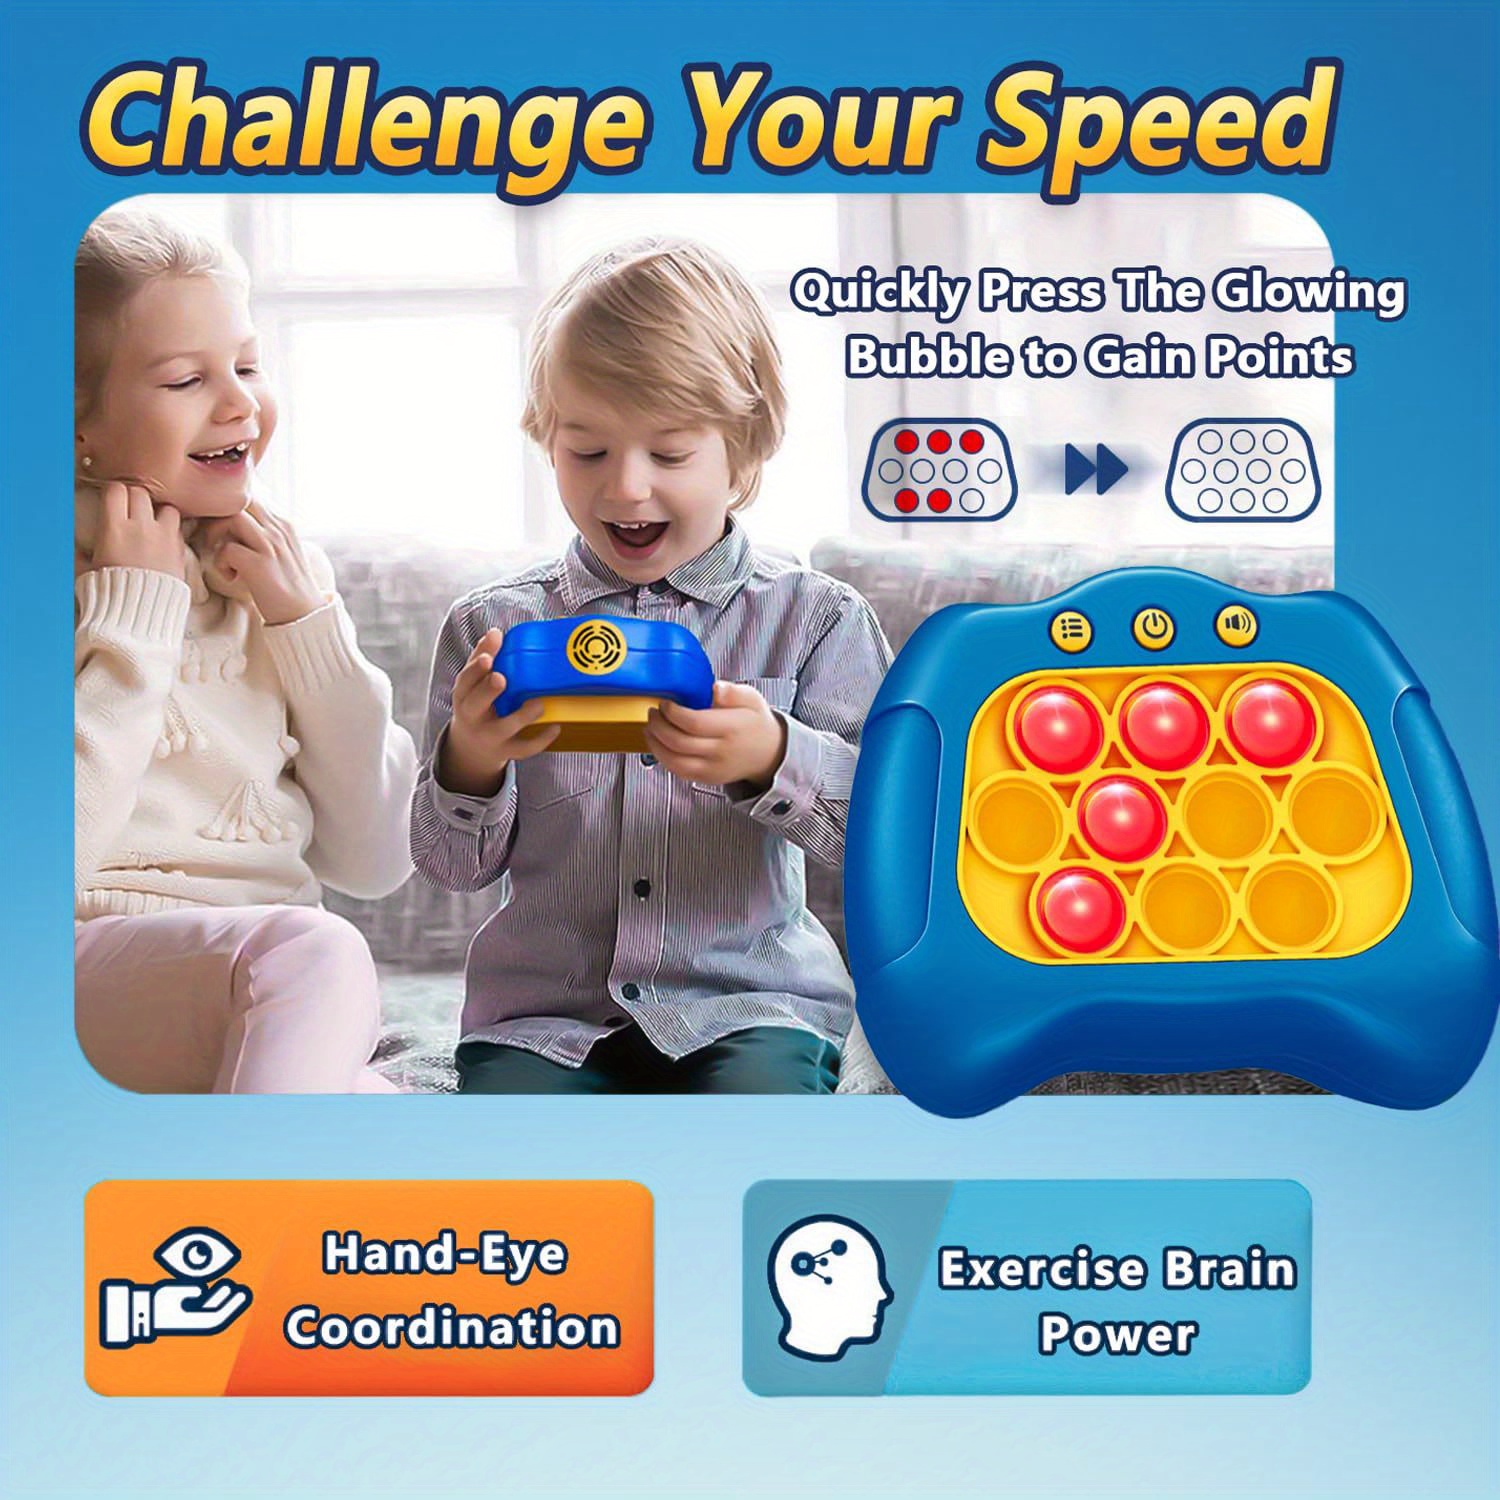 Jouets Pop Fidget à poussée rapide pour adultes et enfants | Machine de jeu  de réflexion | Jouet à bulles sensorielles Push Poppet Squeeze | Console